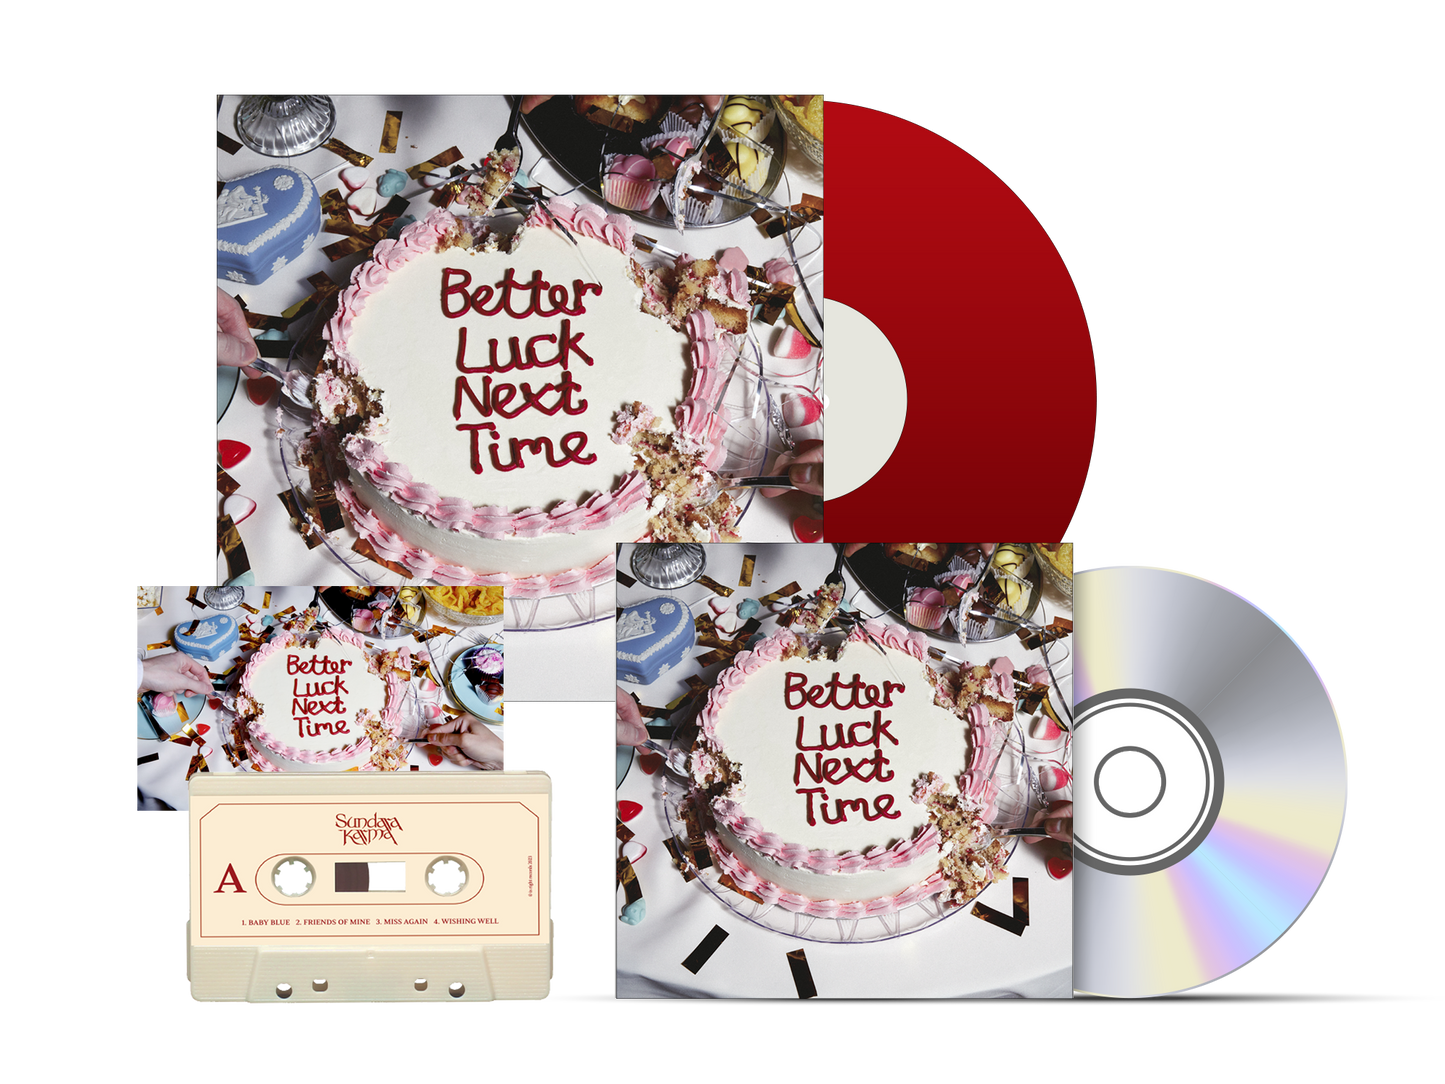 Sundara Karma - Better Luck Nextime - Red Velvet Vinyl, CD, Tape Bundle